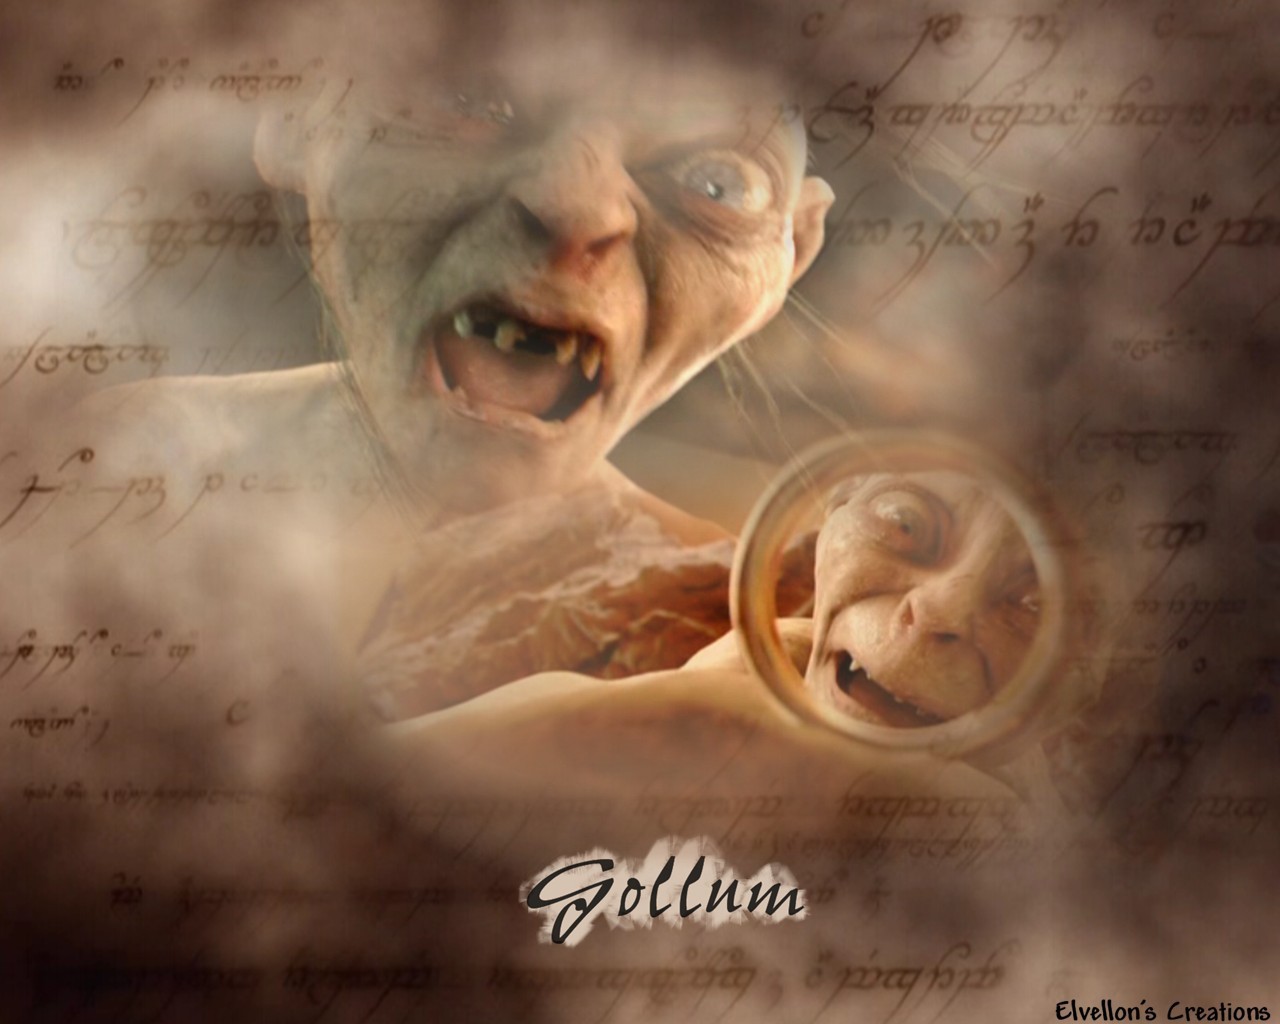 Gollum - Smeagol/Gollum Wallpaper (5977047) - Fanpop